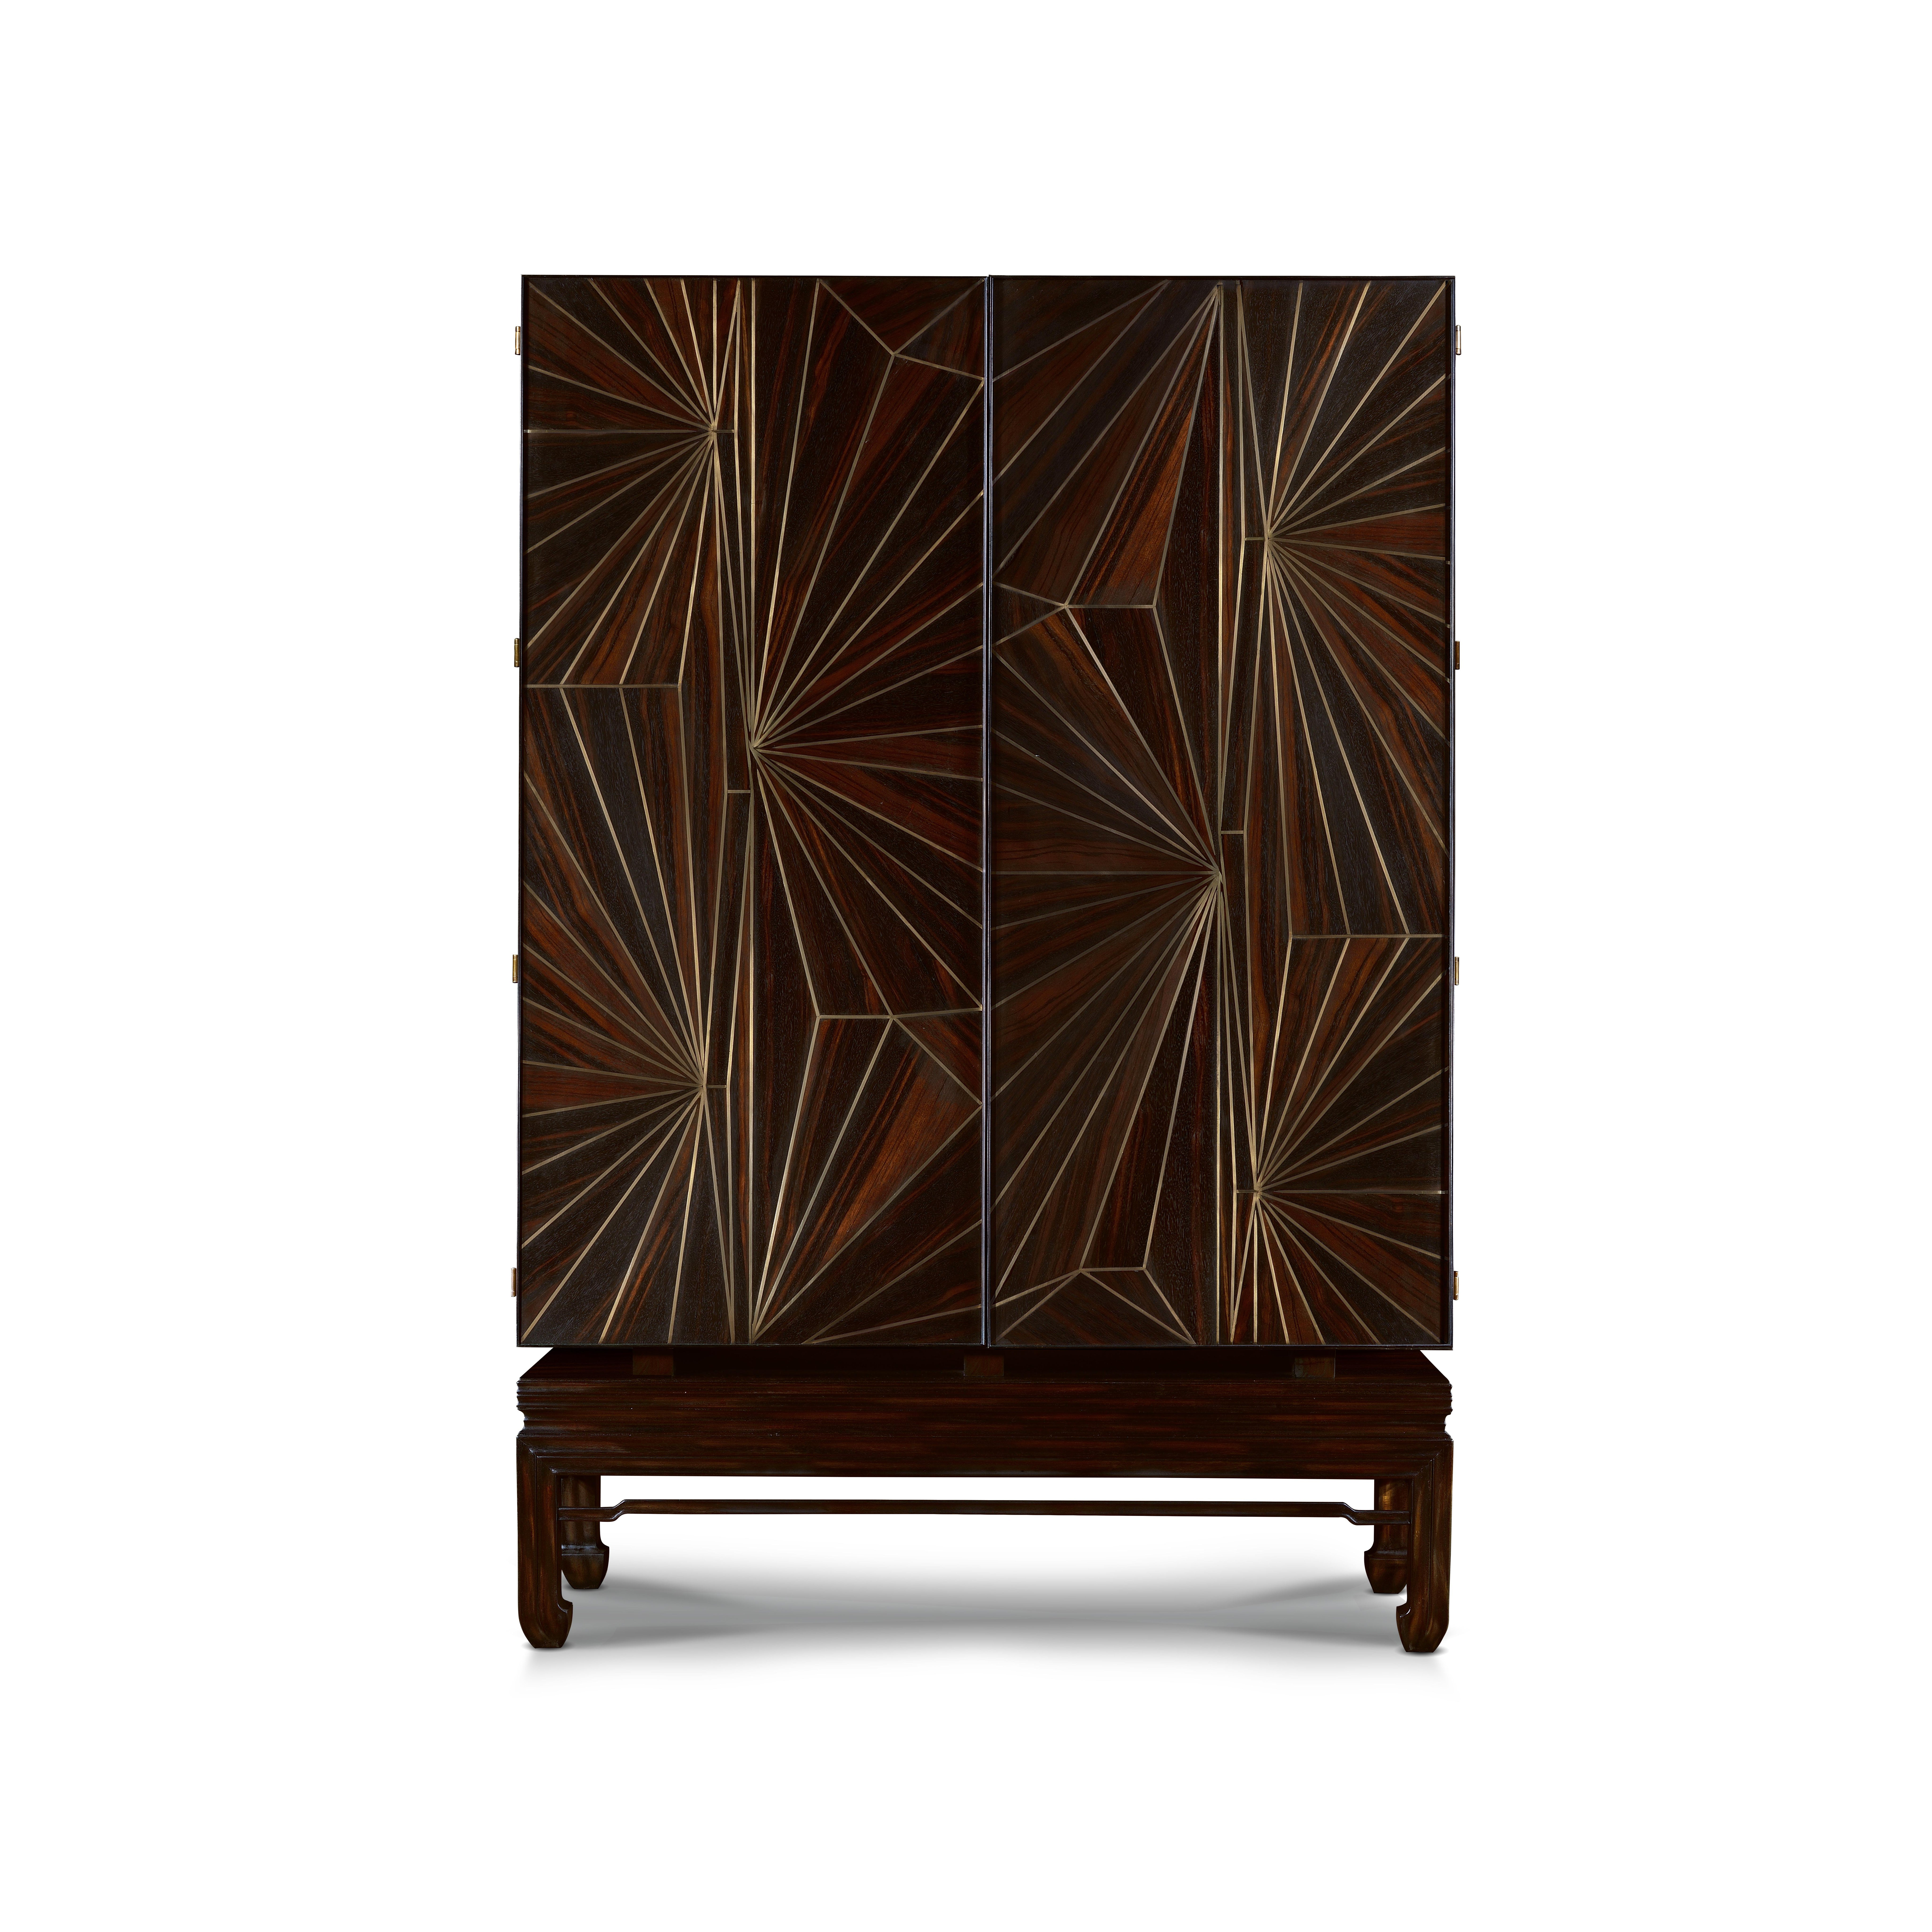 Cette armoire exquise est un meuble de bar luxueux. Placage d'ébène et incrustations complexes en laiton. Il sera la pièce maîtresse d'un intérieur éclectique et avant-gardiste. L'armoire se distingue par une combinaison envoûtante de teintes et de